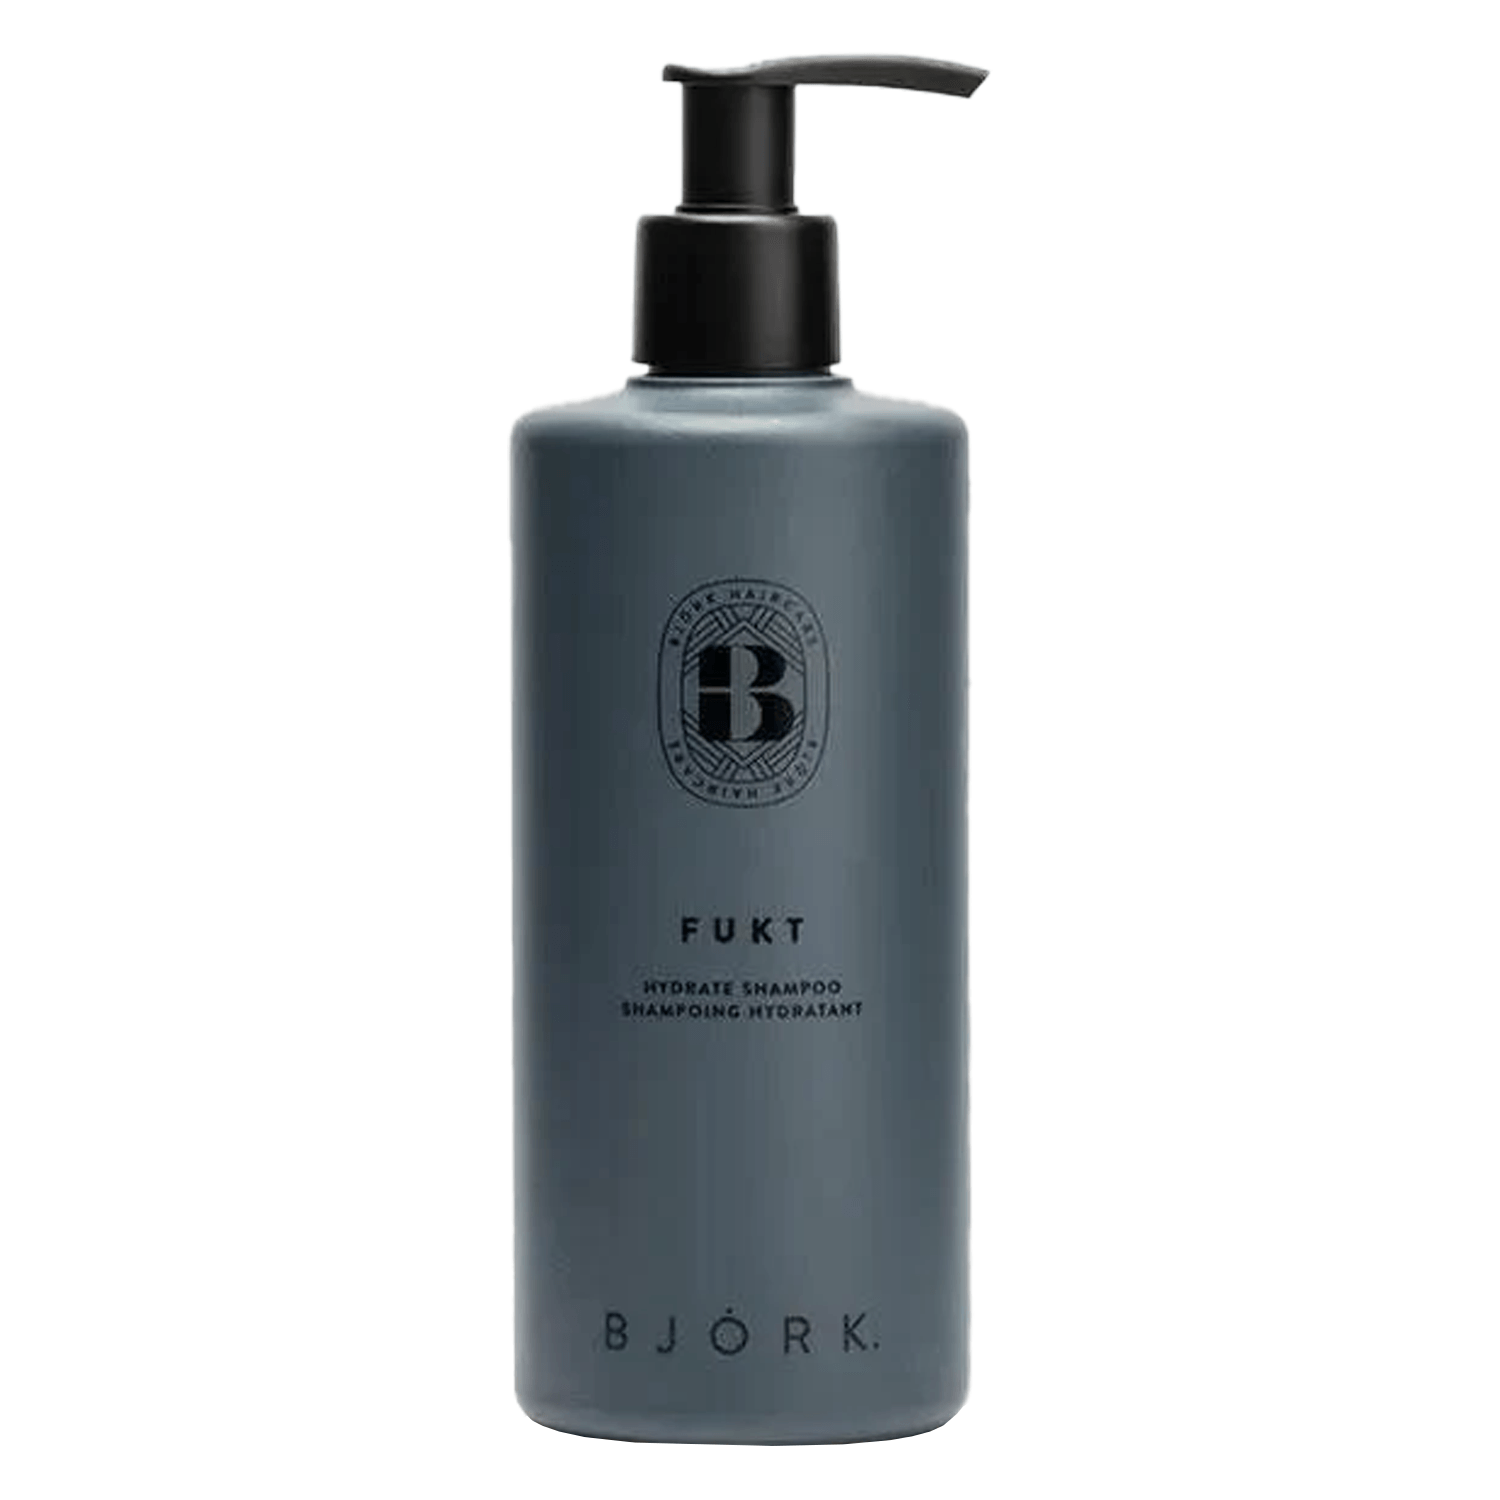 Produktbild von BJÖRK - Fukt Hydrate Shampoo